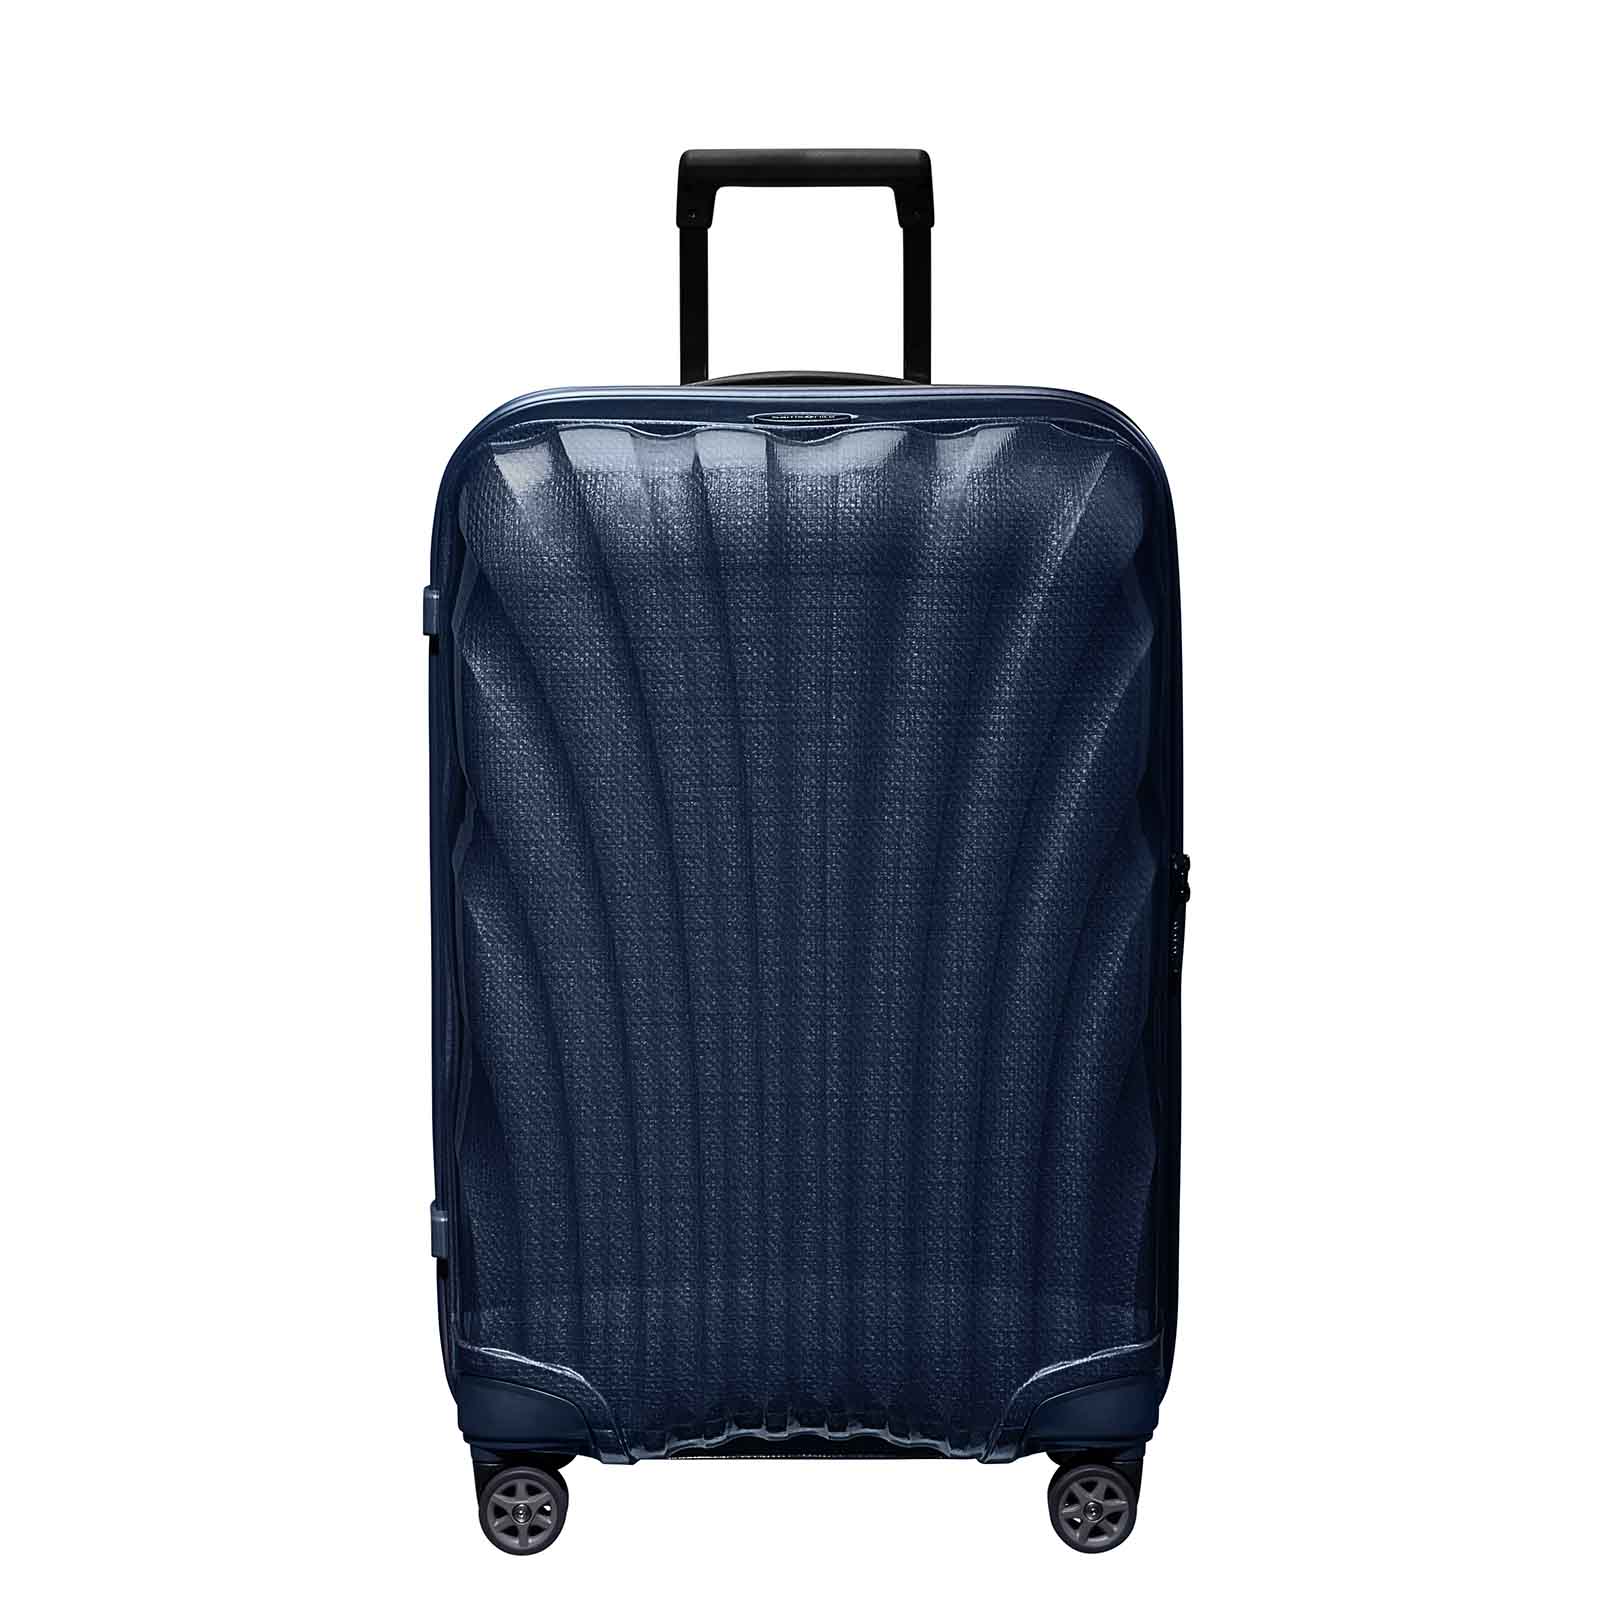 Samsonite-C-Lite-69cm-Suitcase-Midnight-Blue-Front